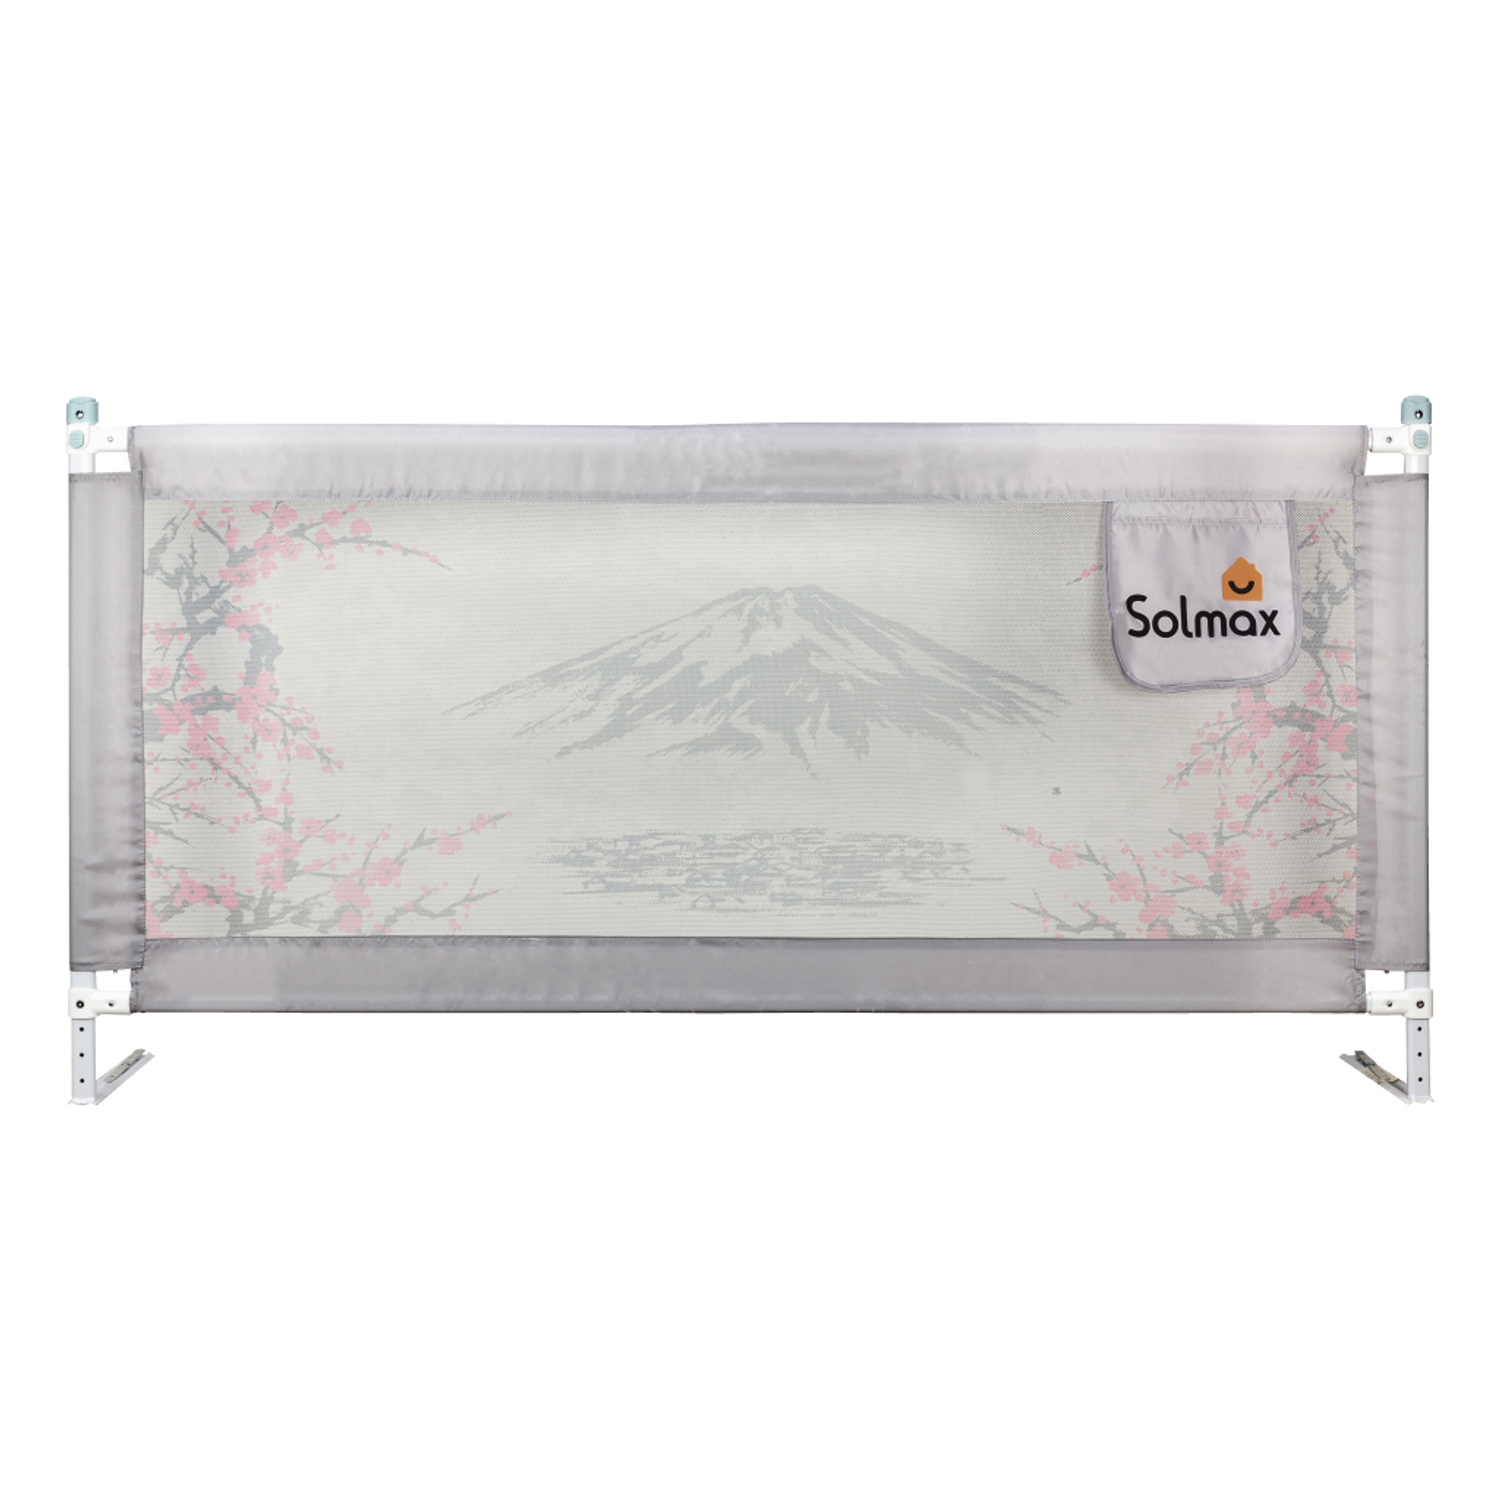 Защитный барьер для кровати Solmax 160 см серый/розовый - фото 9